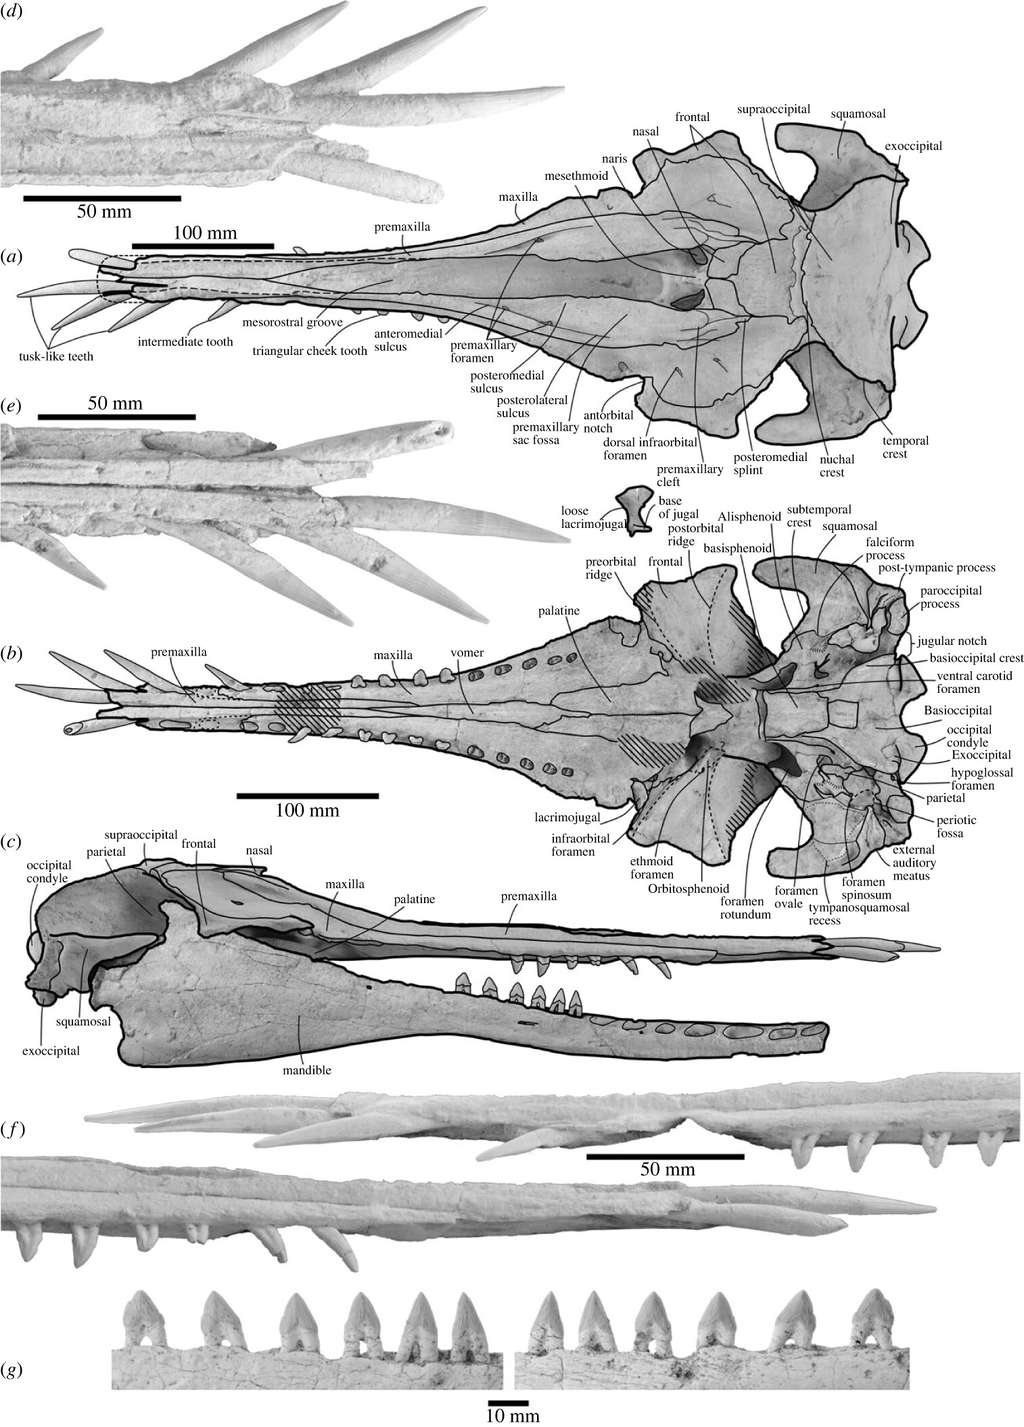 Les différents éléments du crâne de <em>N. matakoi</em> en vue dorsale (a) et (d), ventrale (b) et (e), et latérale (c) et (f). Les photos (g) présentent les dents de la mâchoire inférieure (mandible) en vue externe et interne. © A. Coste <em>et al</em>. (2023)